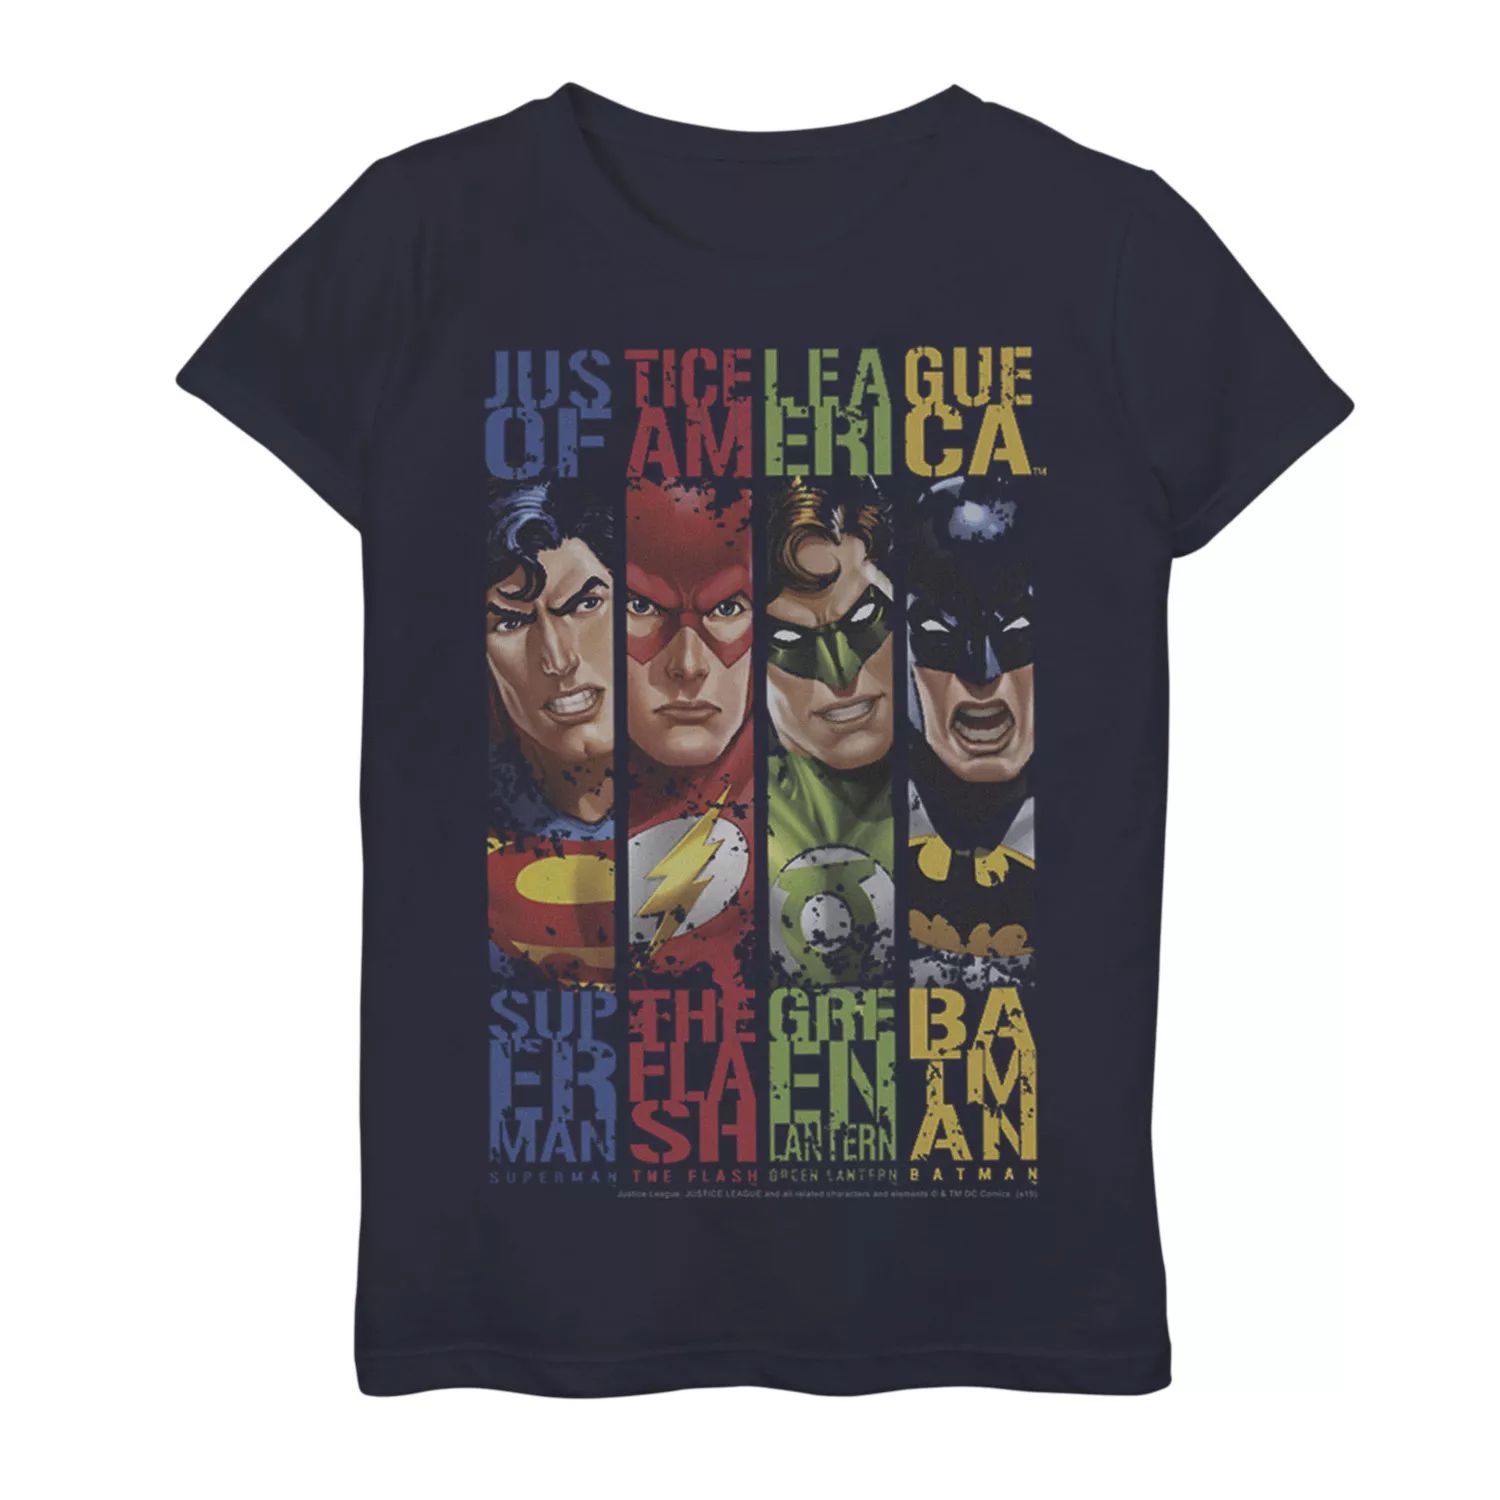 Футболка с графическим рисунком и панелями героев DC Comics для девочек 7–16 лет DC Comics, синий футболка с геометрическим плакатом и графическим рисунком dc comics для девочек 7–16 лет с бэтменом dc comics